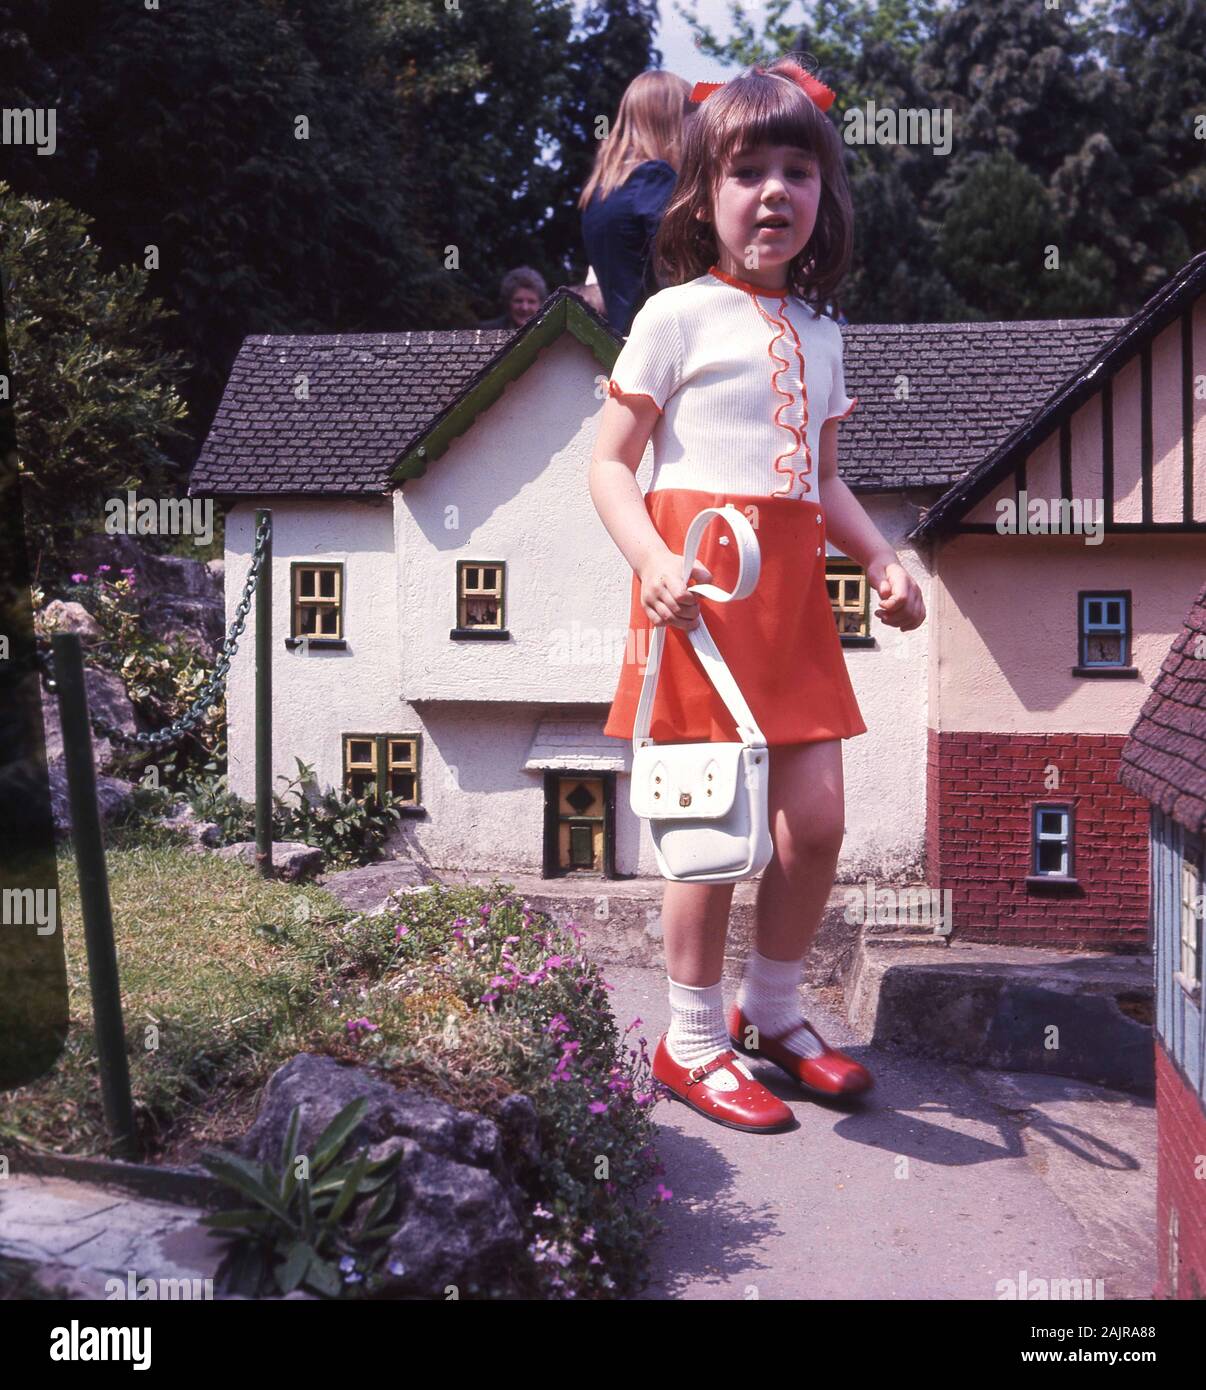 Années 60, historique, jeune fille avec un sac à main visitant un village  modèle, une collection de modèles à petite échelle de différents types de  bâtiments disposés comme un village anglais typique,